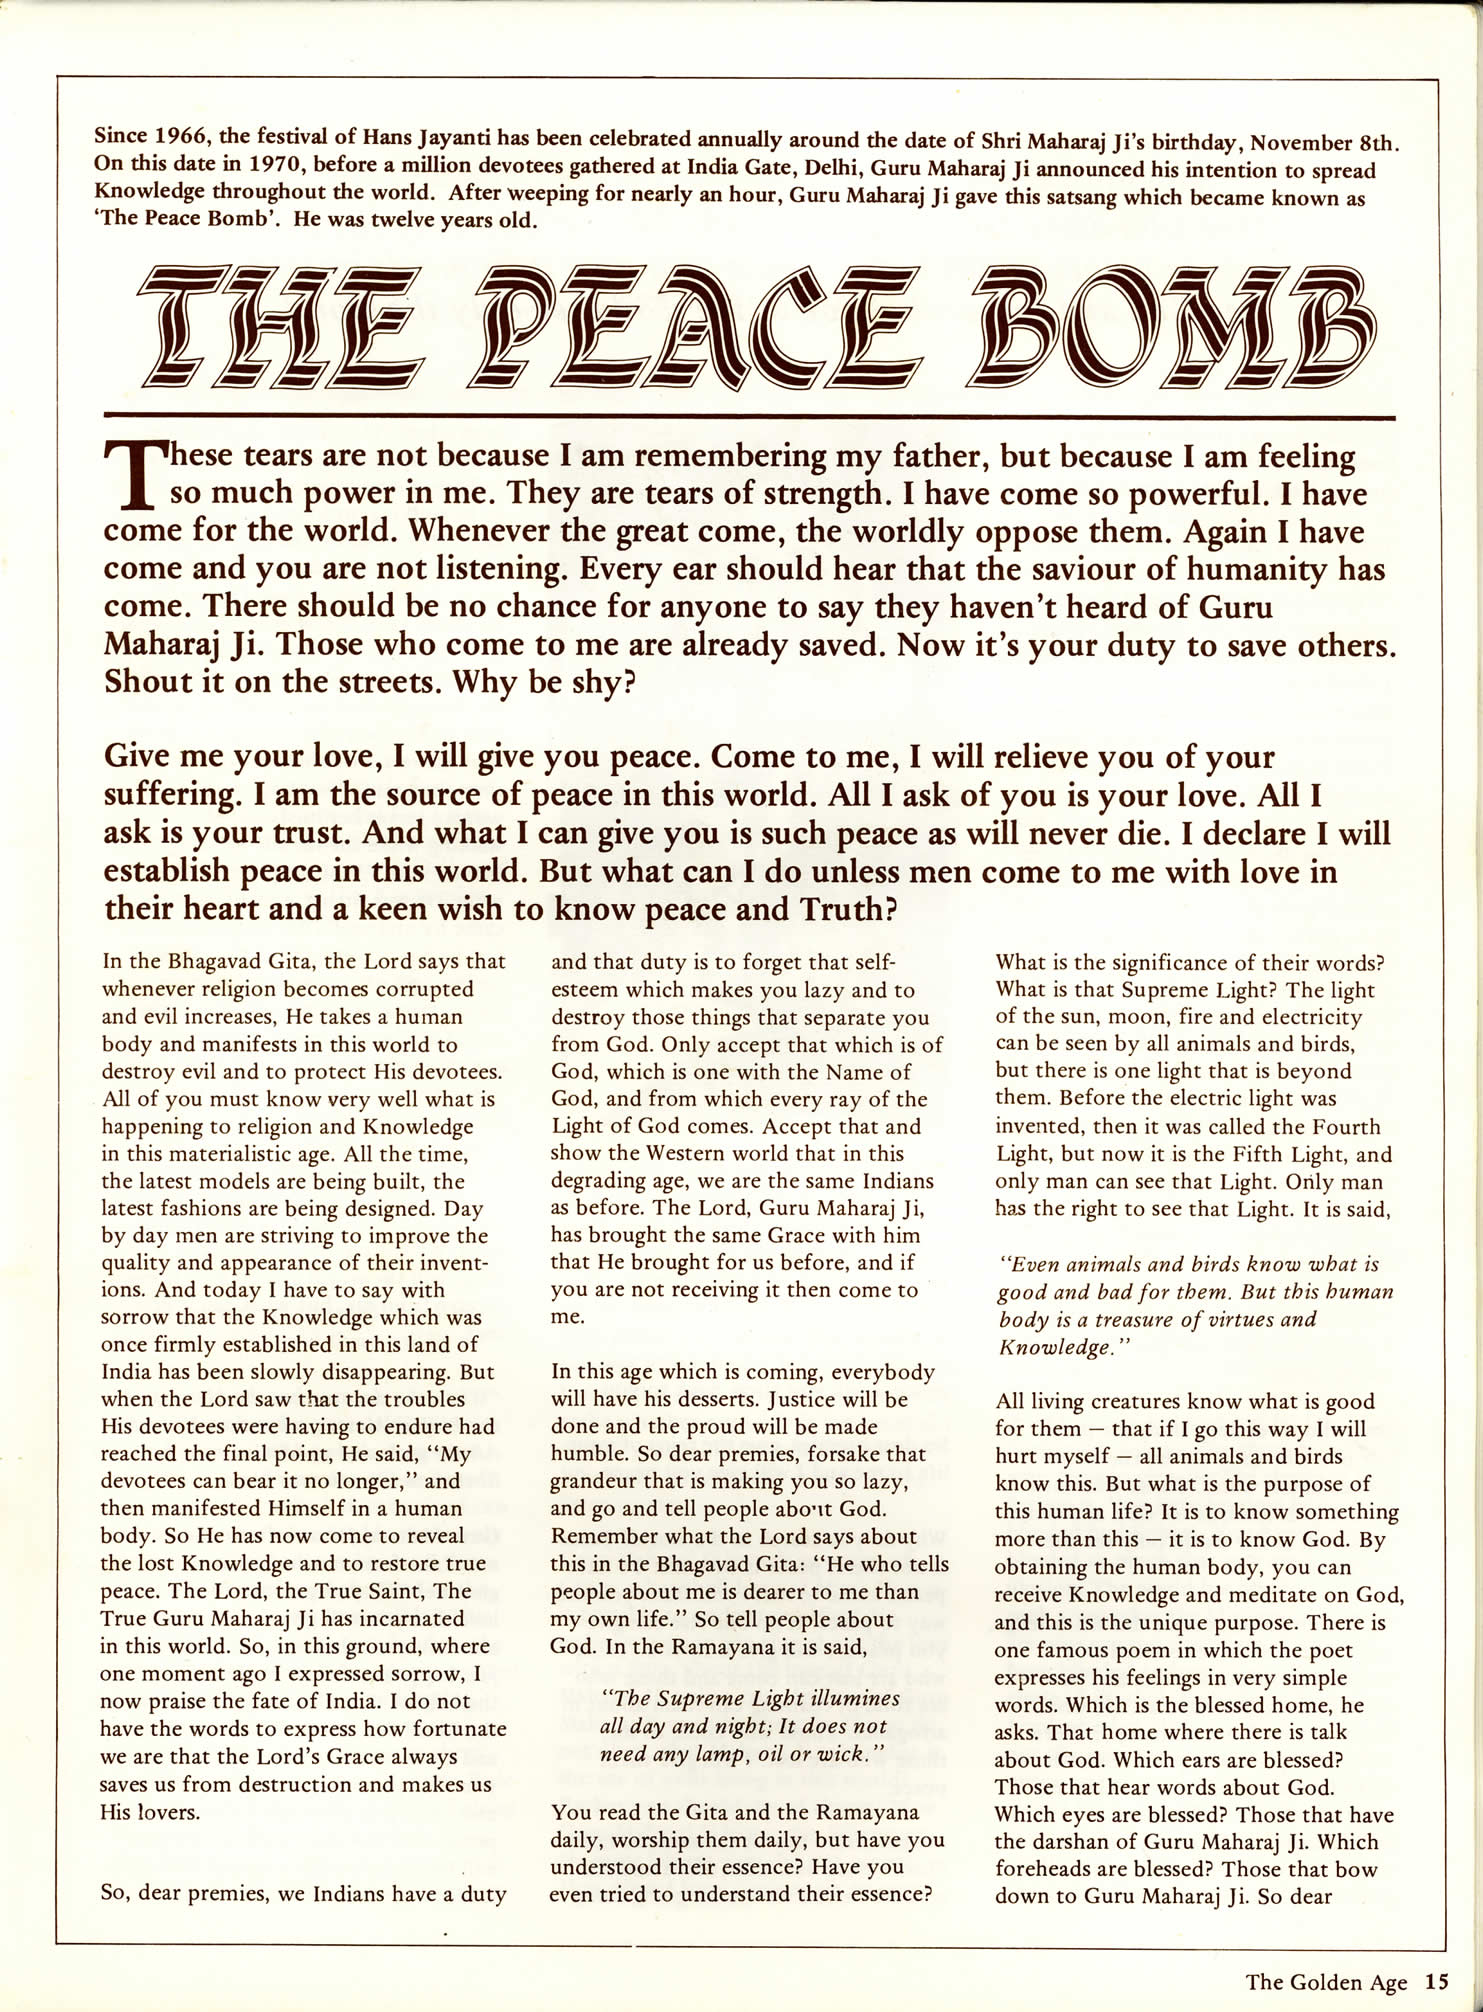 page15_maharaji_peace_bomb.jpg 527.7K